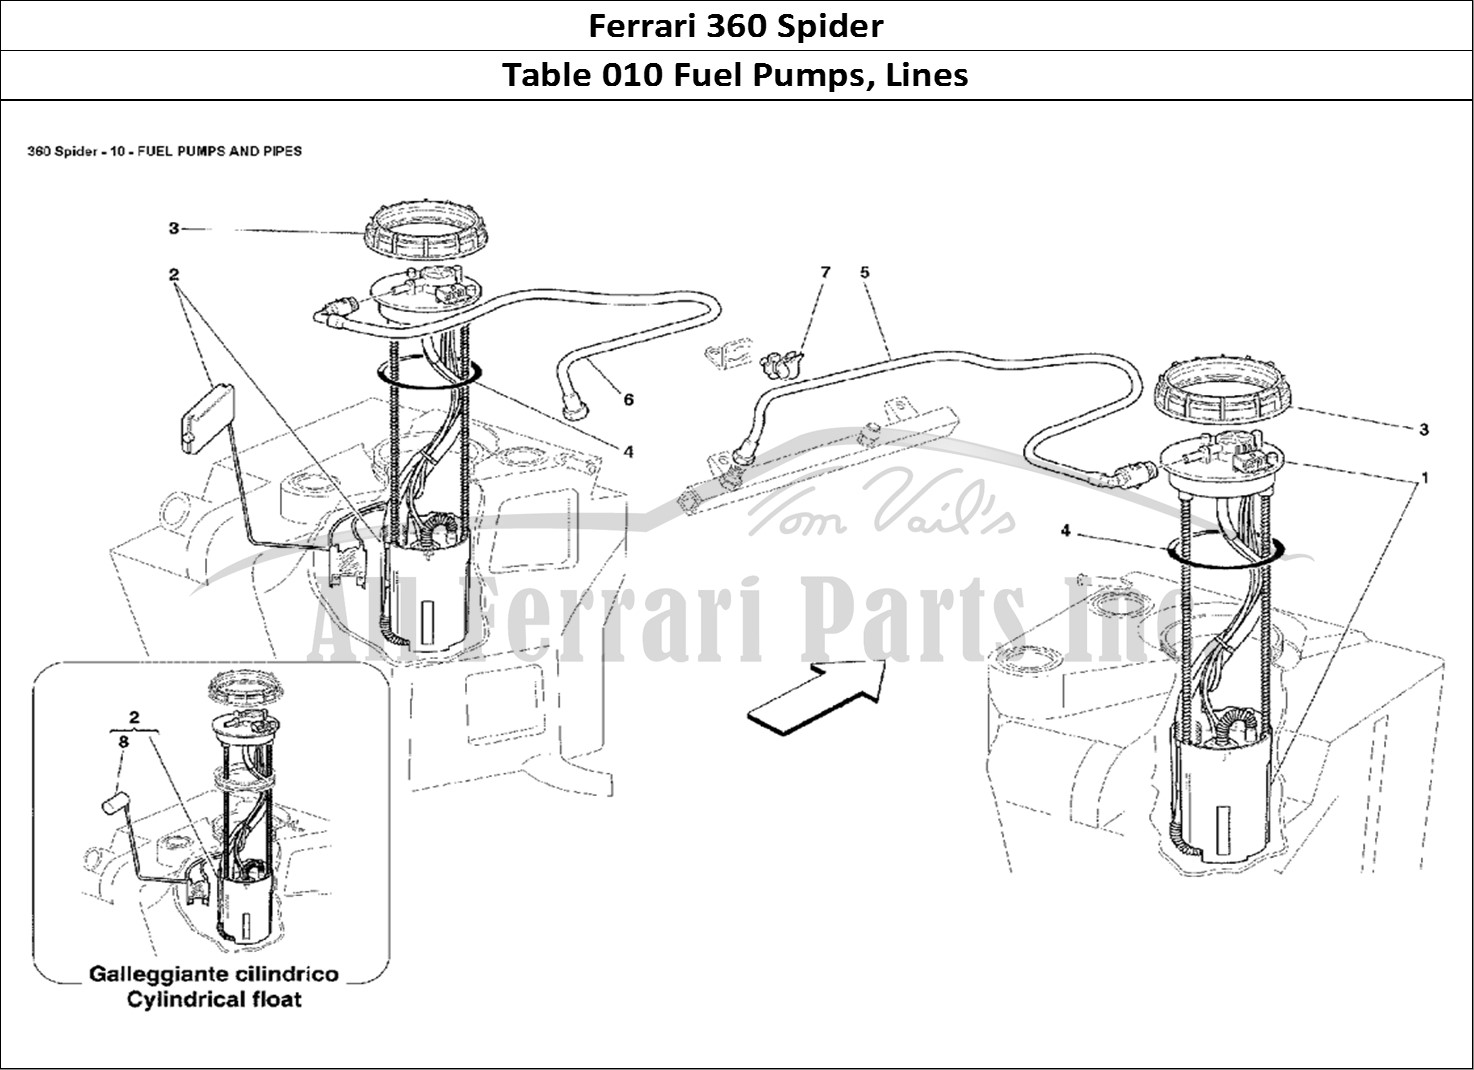 Ferrari Parts Ferrari 360 Spider Page 010 Fuel Pumps and Pipes